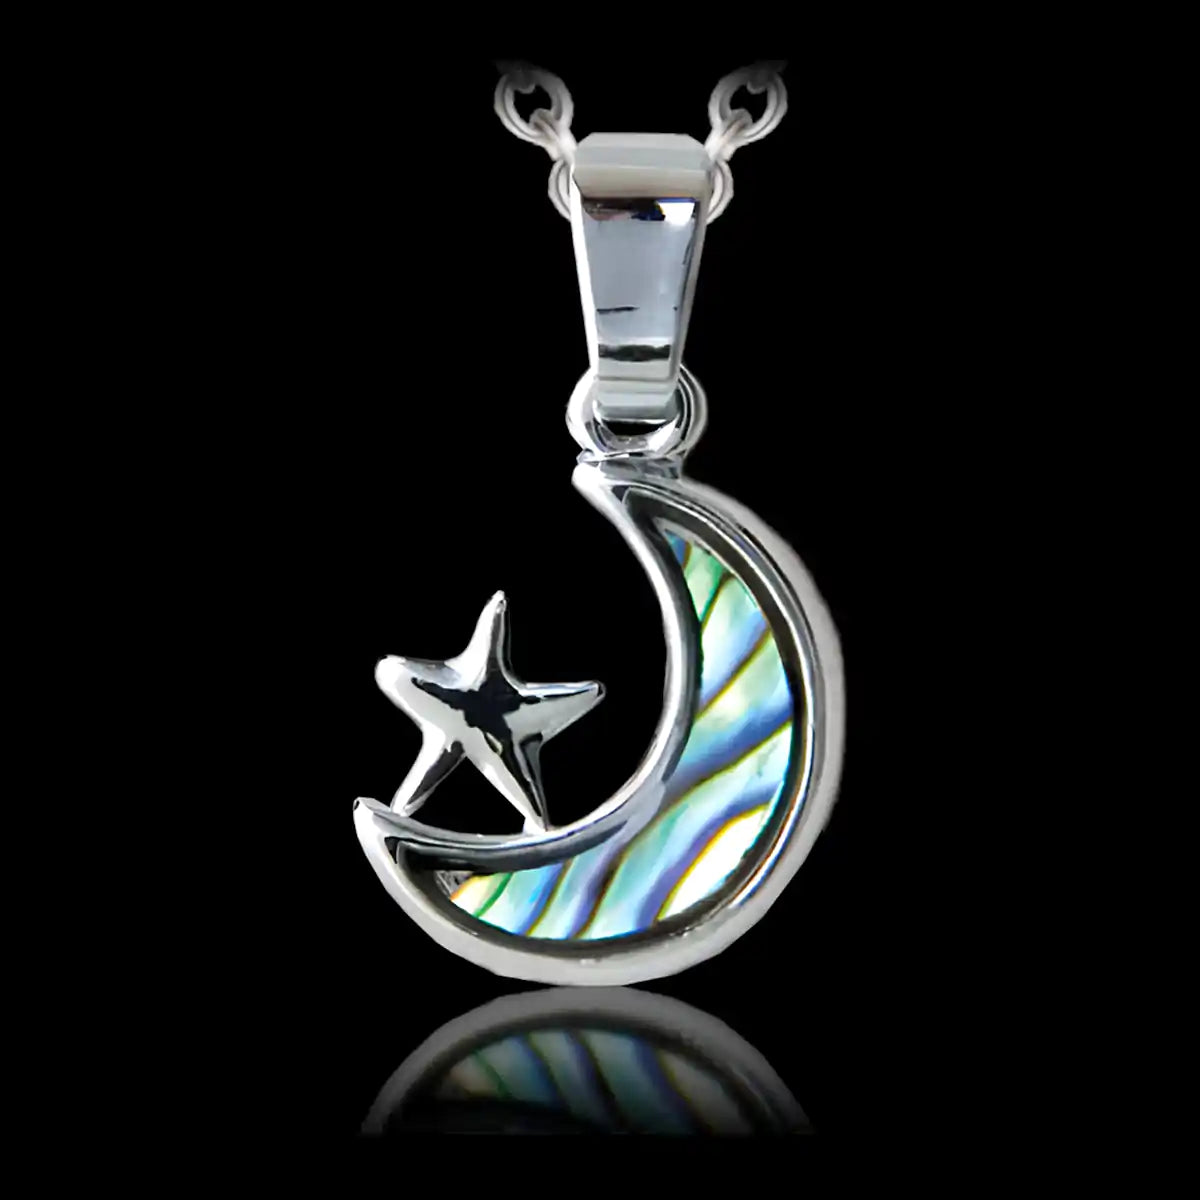 Glacier pearle star & moon necklace